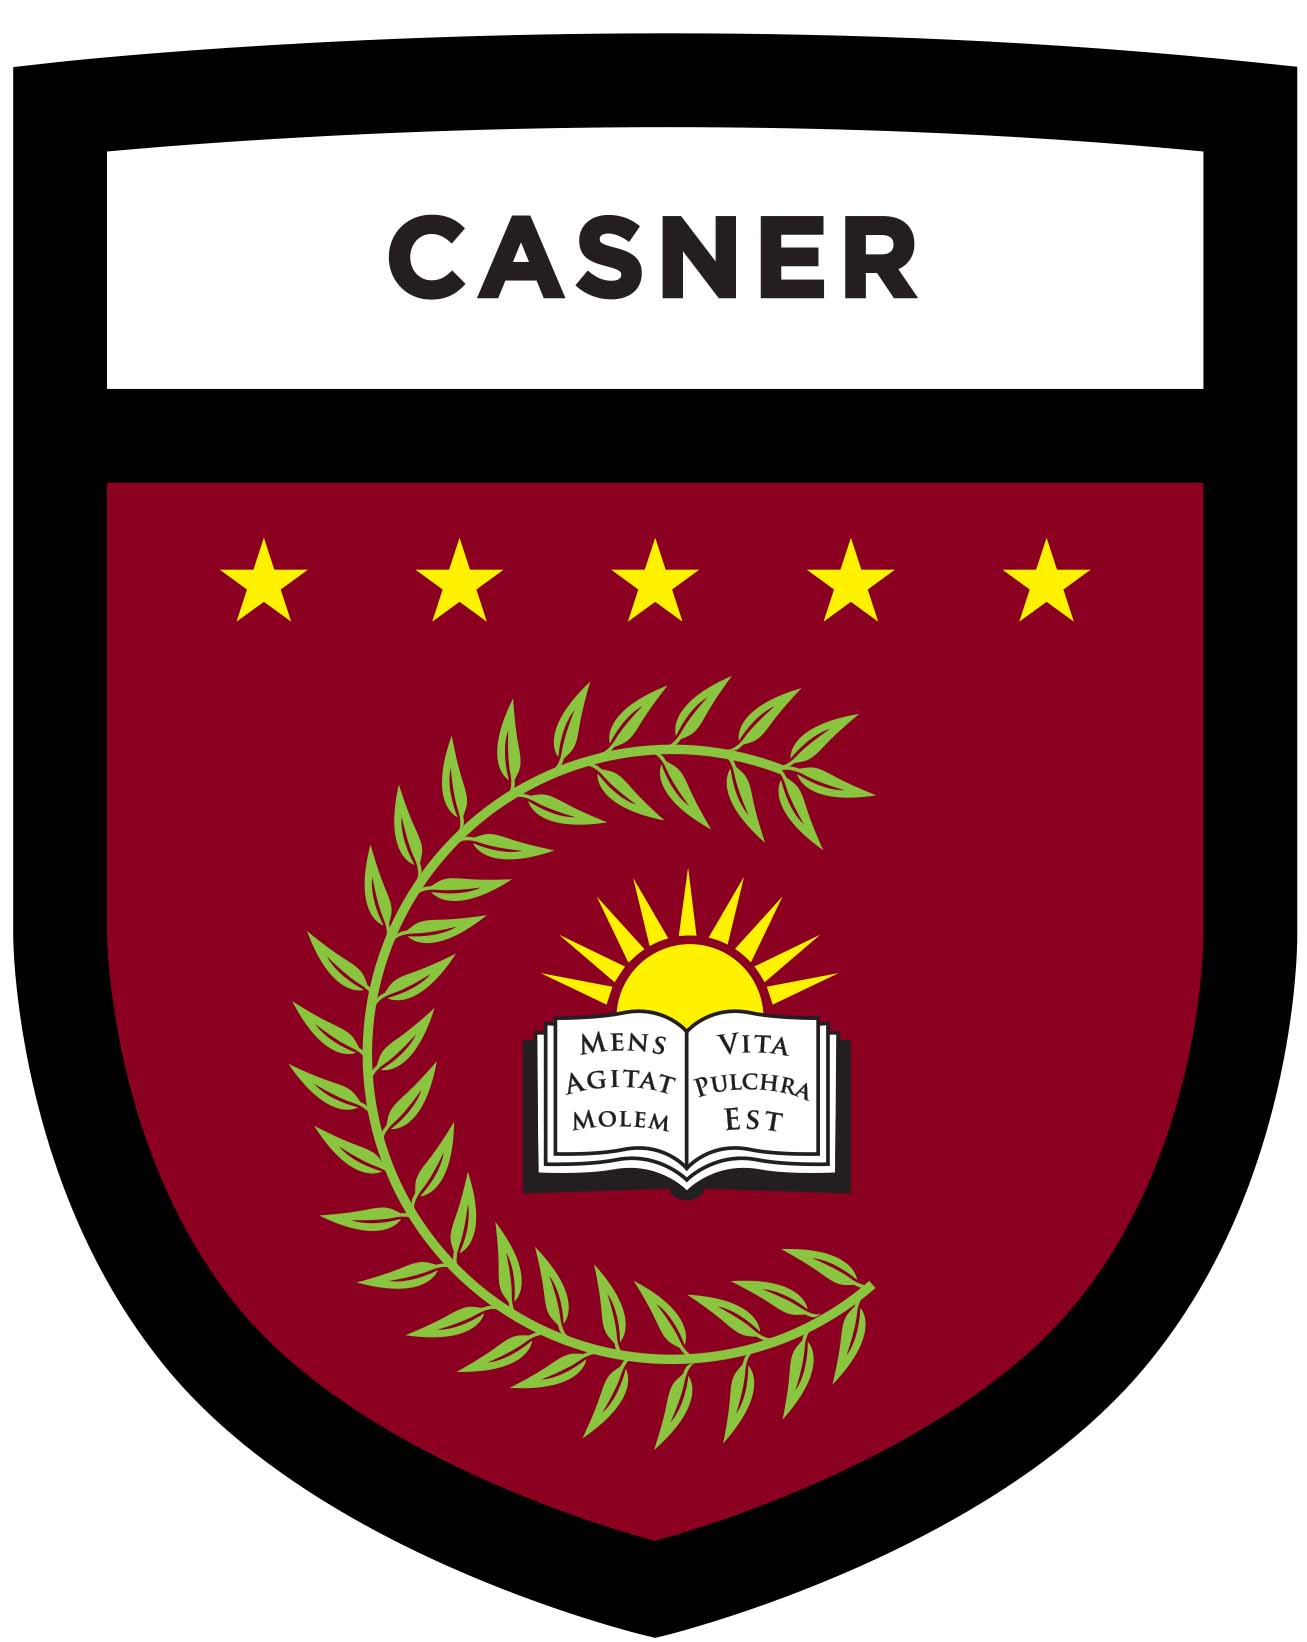 Casner Shield